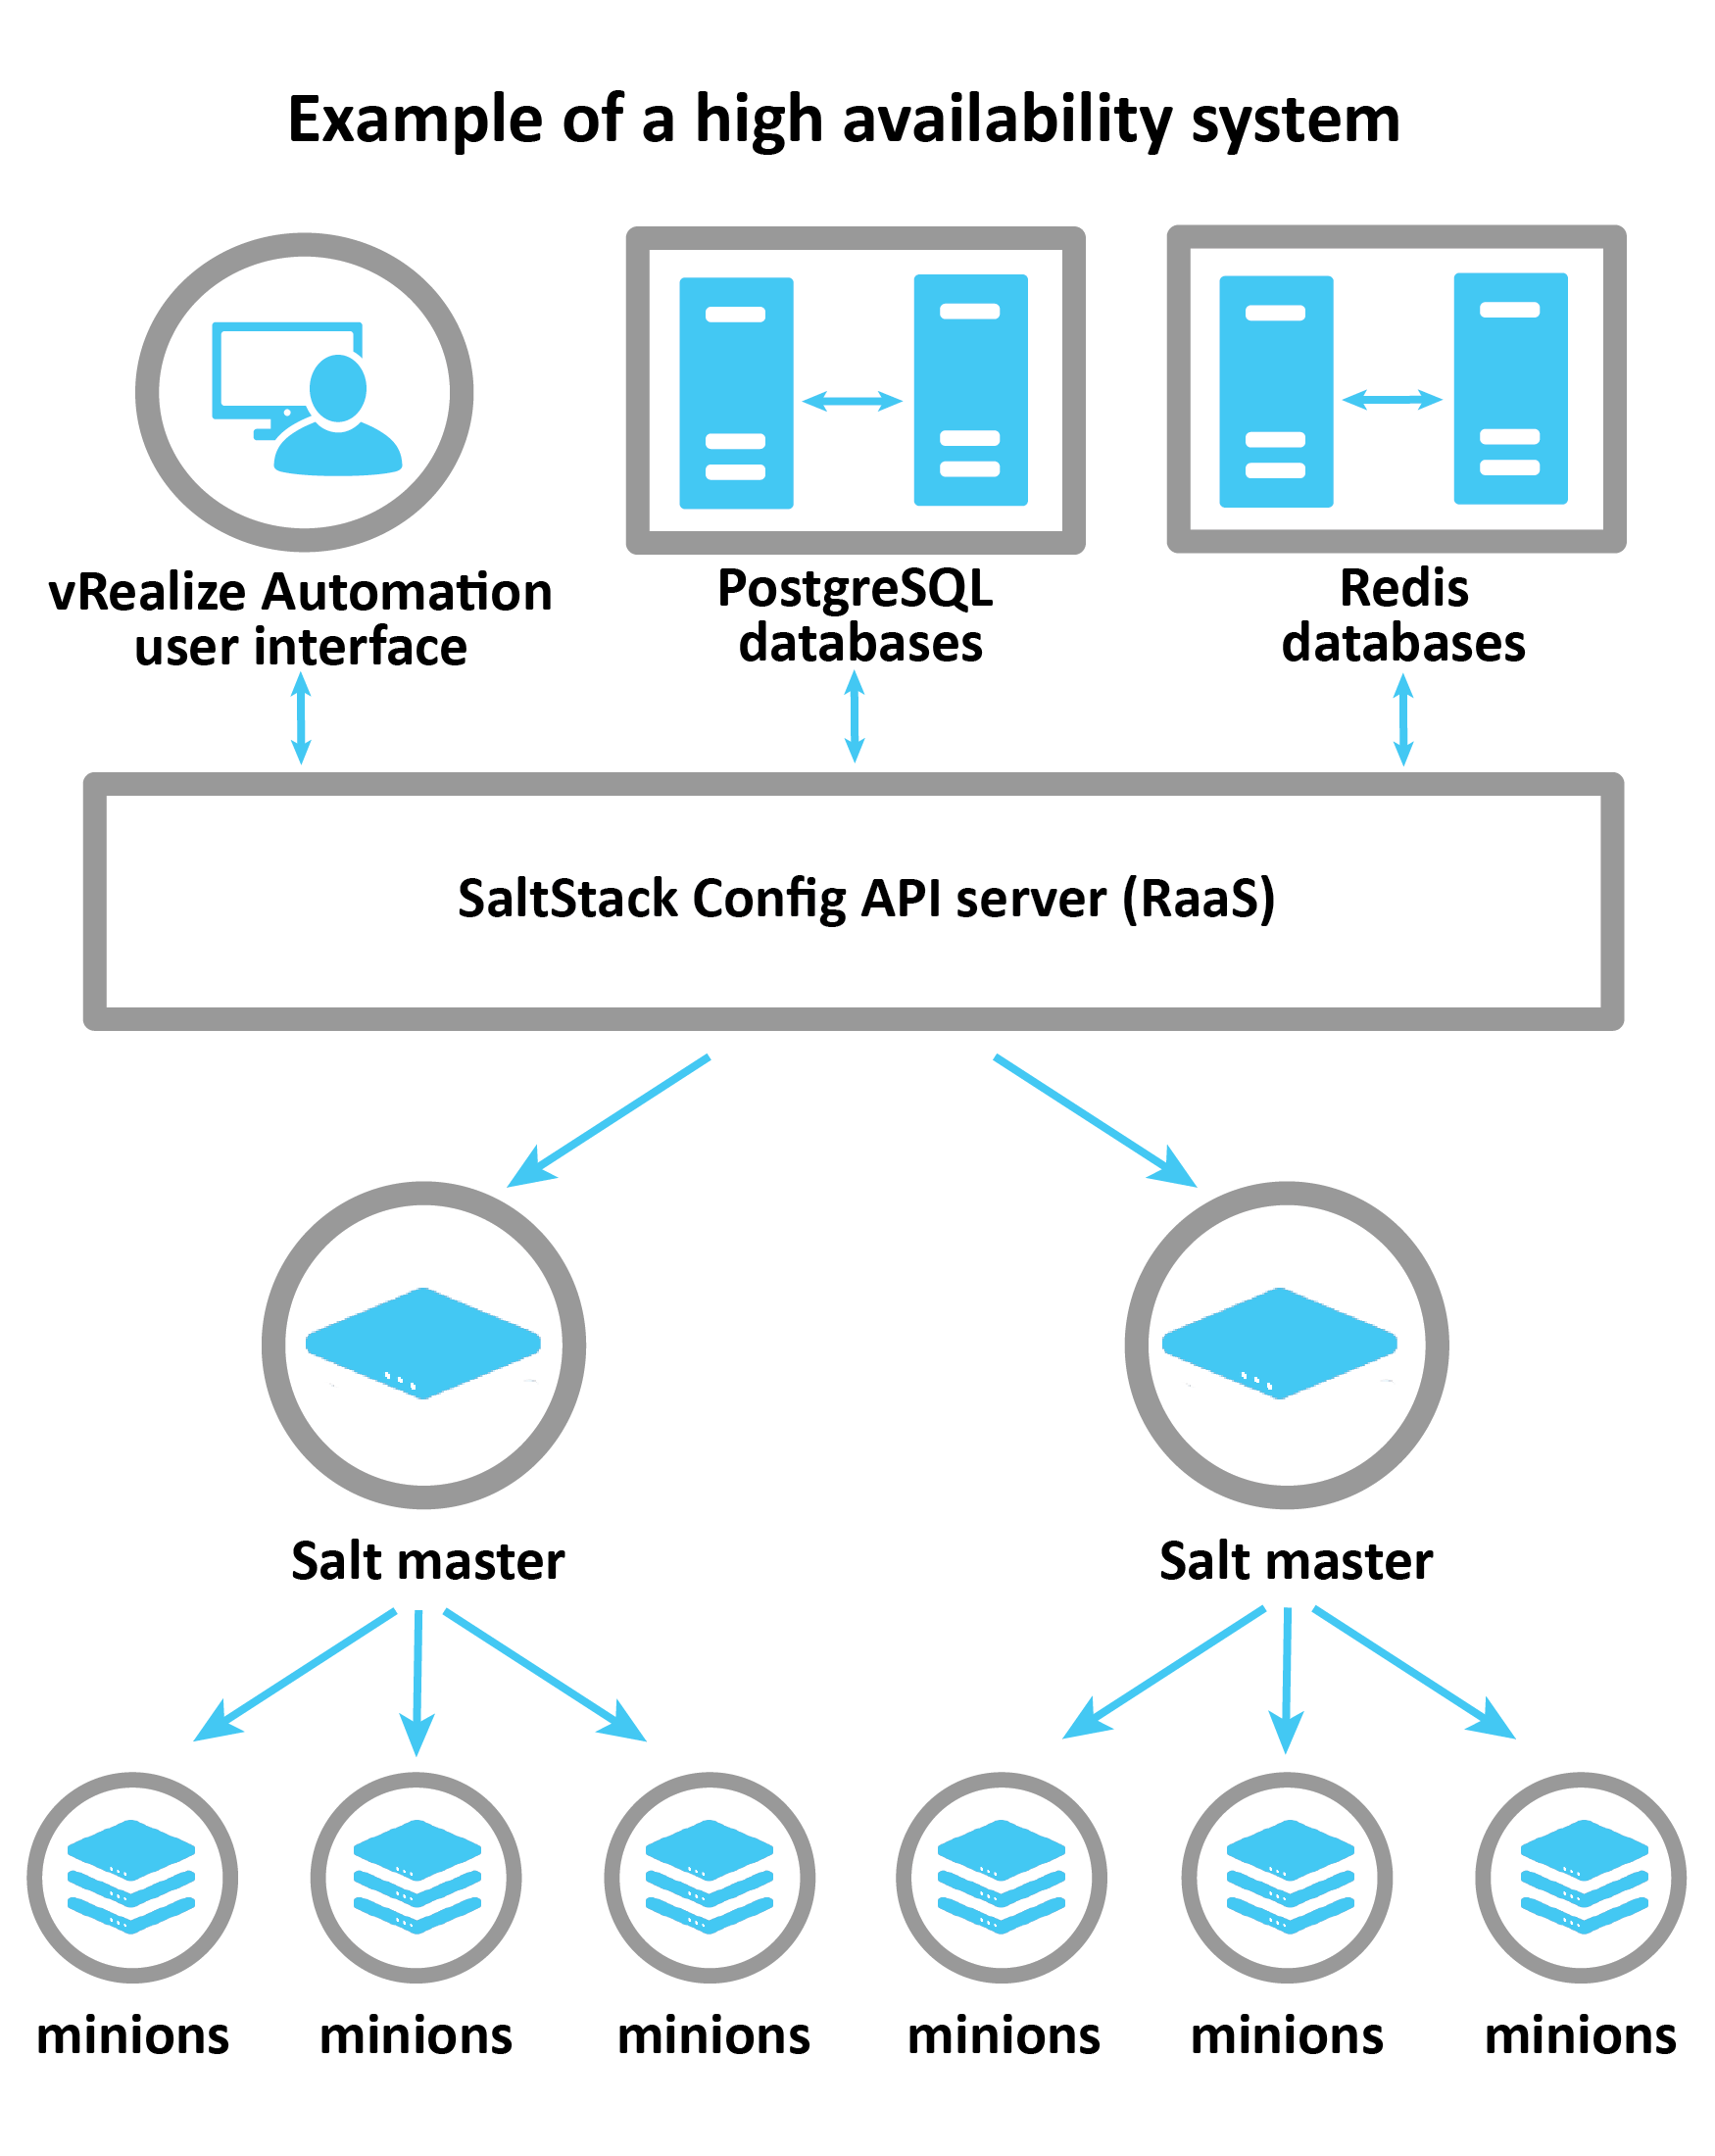 На схеме показана система высокой доступности. Пользовательский интерфейс vRA подключается к серверу RaaS, который управляет несколькими главными серверами Salt, к каждому из которых относится несколько служебных серверов.